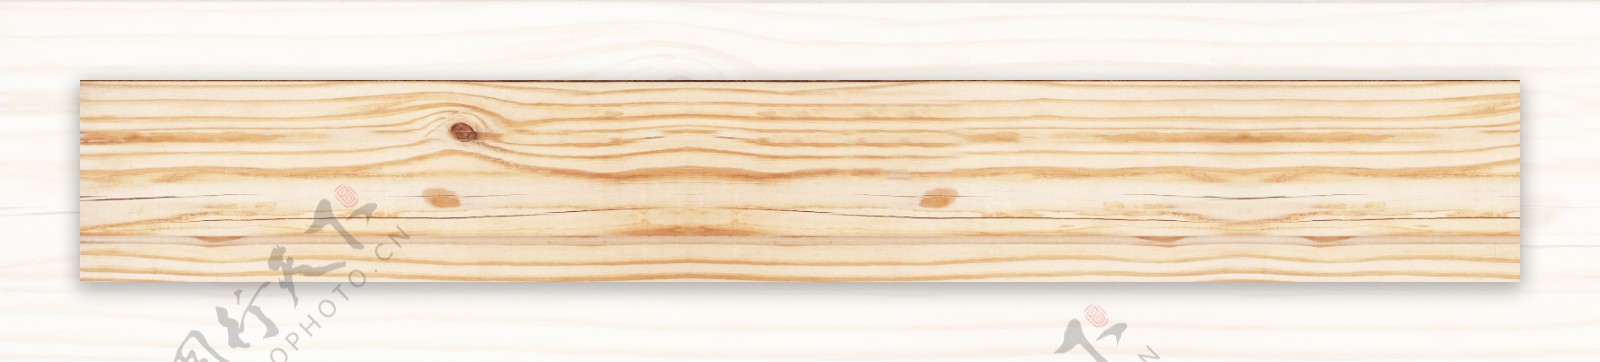 木纹木材